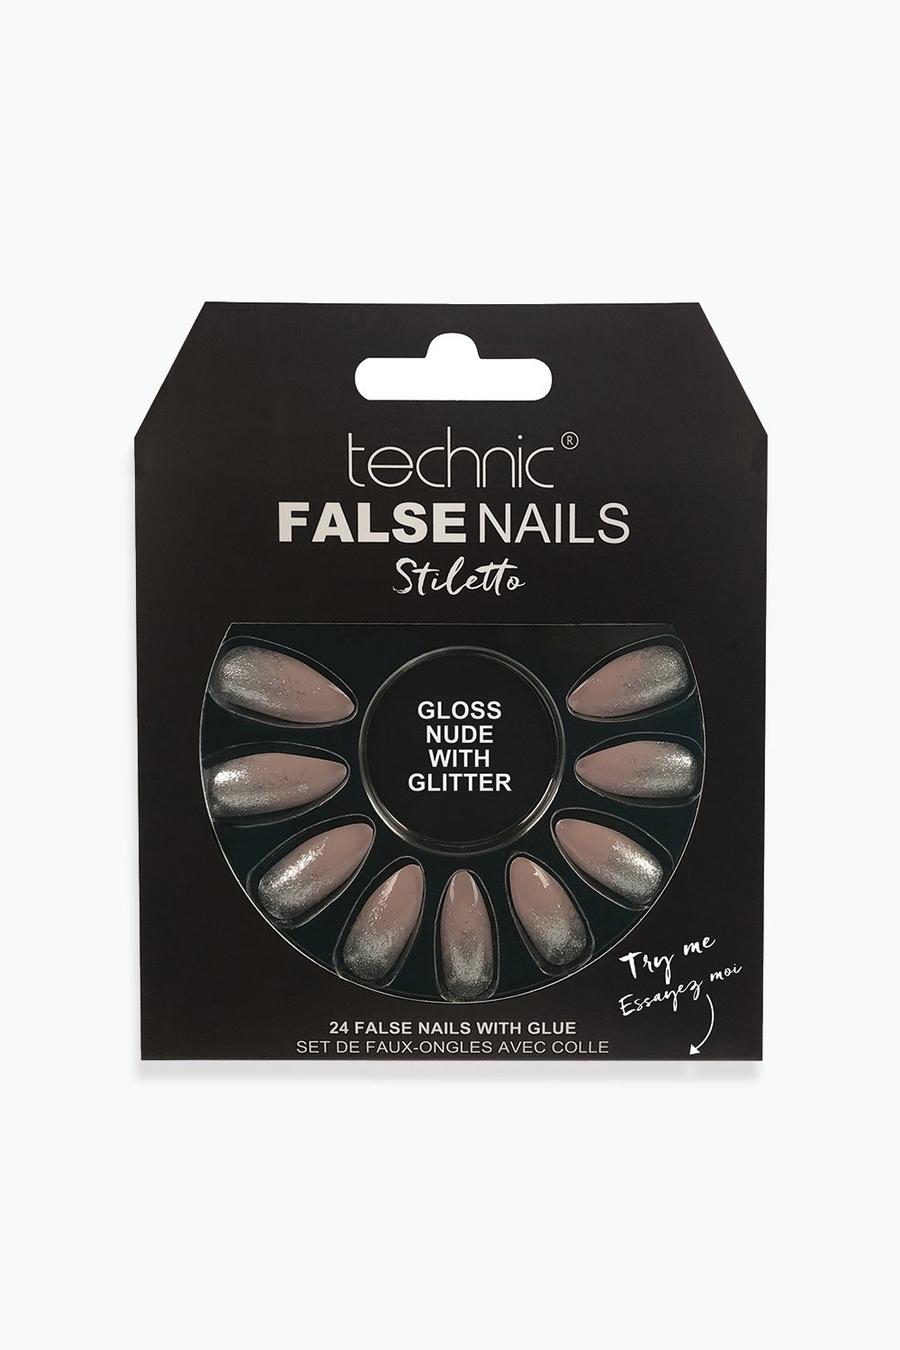 Technic - Unghie finte Stiletto Gloss Nude glitterate image number 1